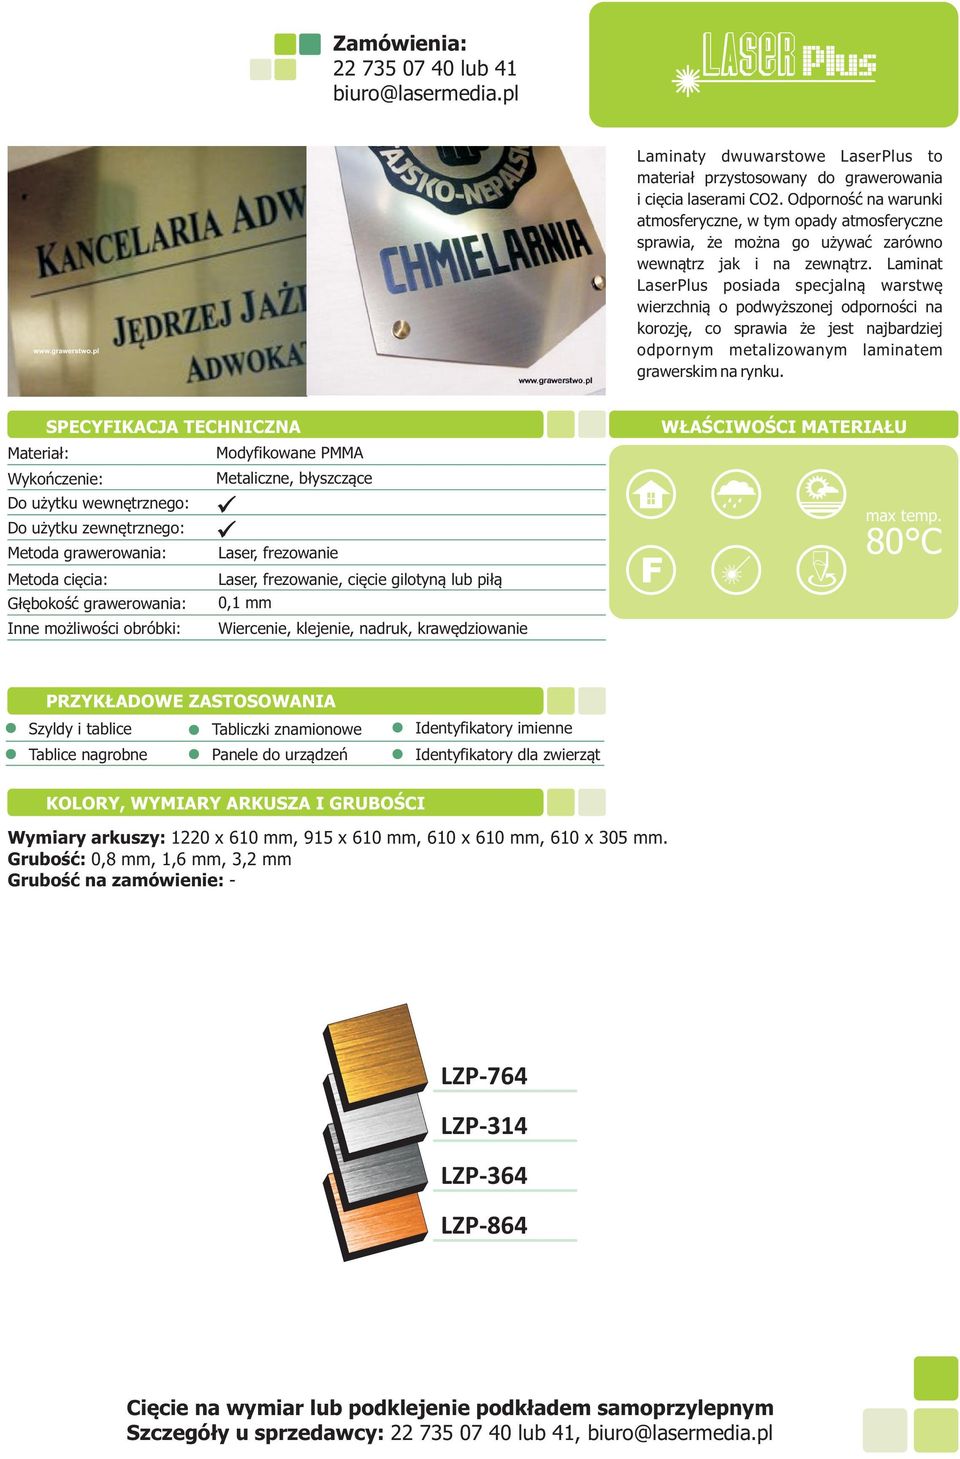 Laminat LaserPlus posiada specjaln¹ warstwê wierzchni¹ o podwy szonej odpornoœci na korozjê, co sprawia e jest najbardziej odpornym metalizowanym laminatem grawerskim na rynku.